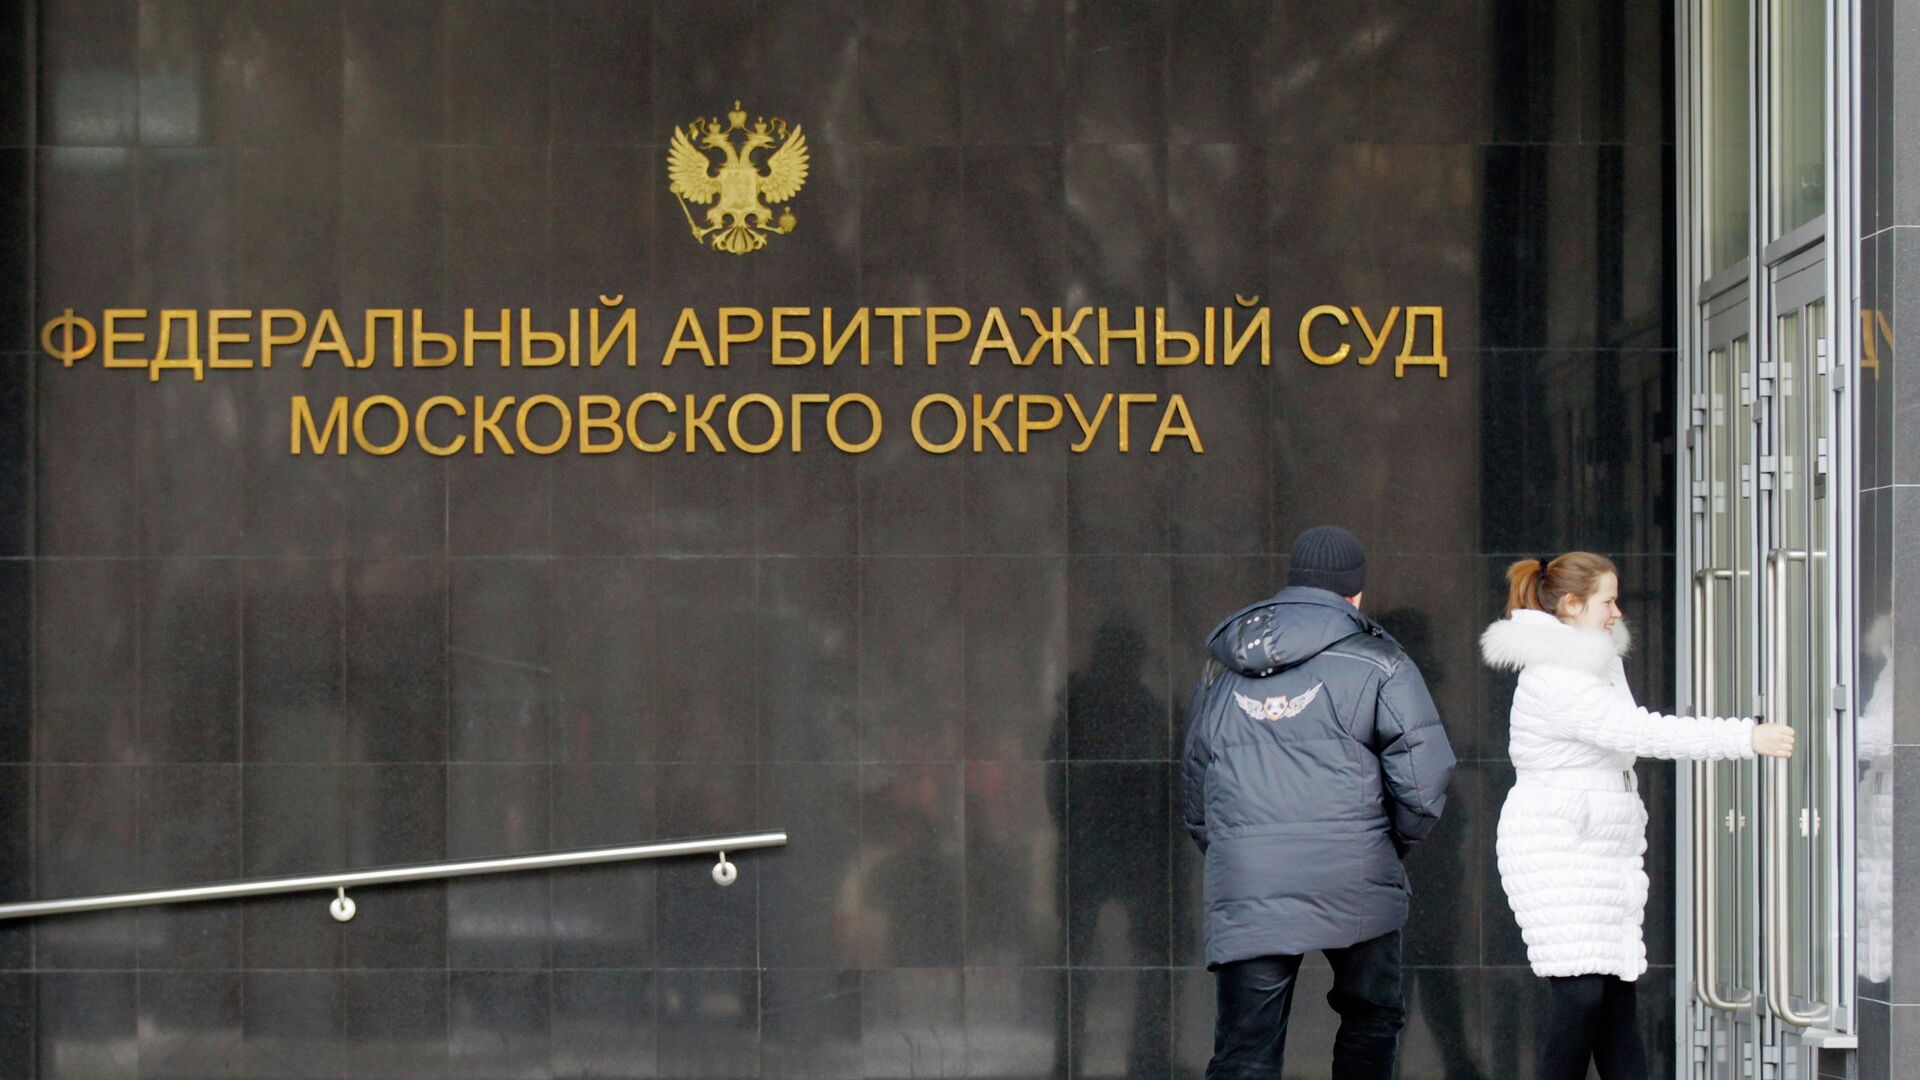 Жители Москвы входят в здание Федерального арбитражного суда Московского округа - РИА Новости, 1920, 17.12.2019